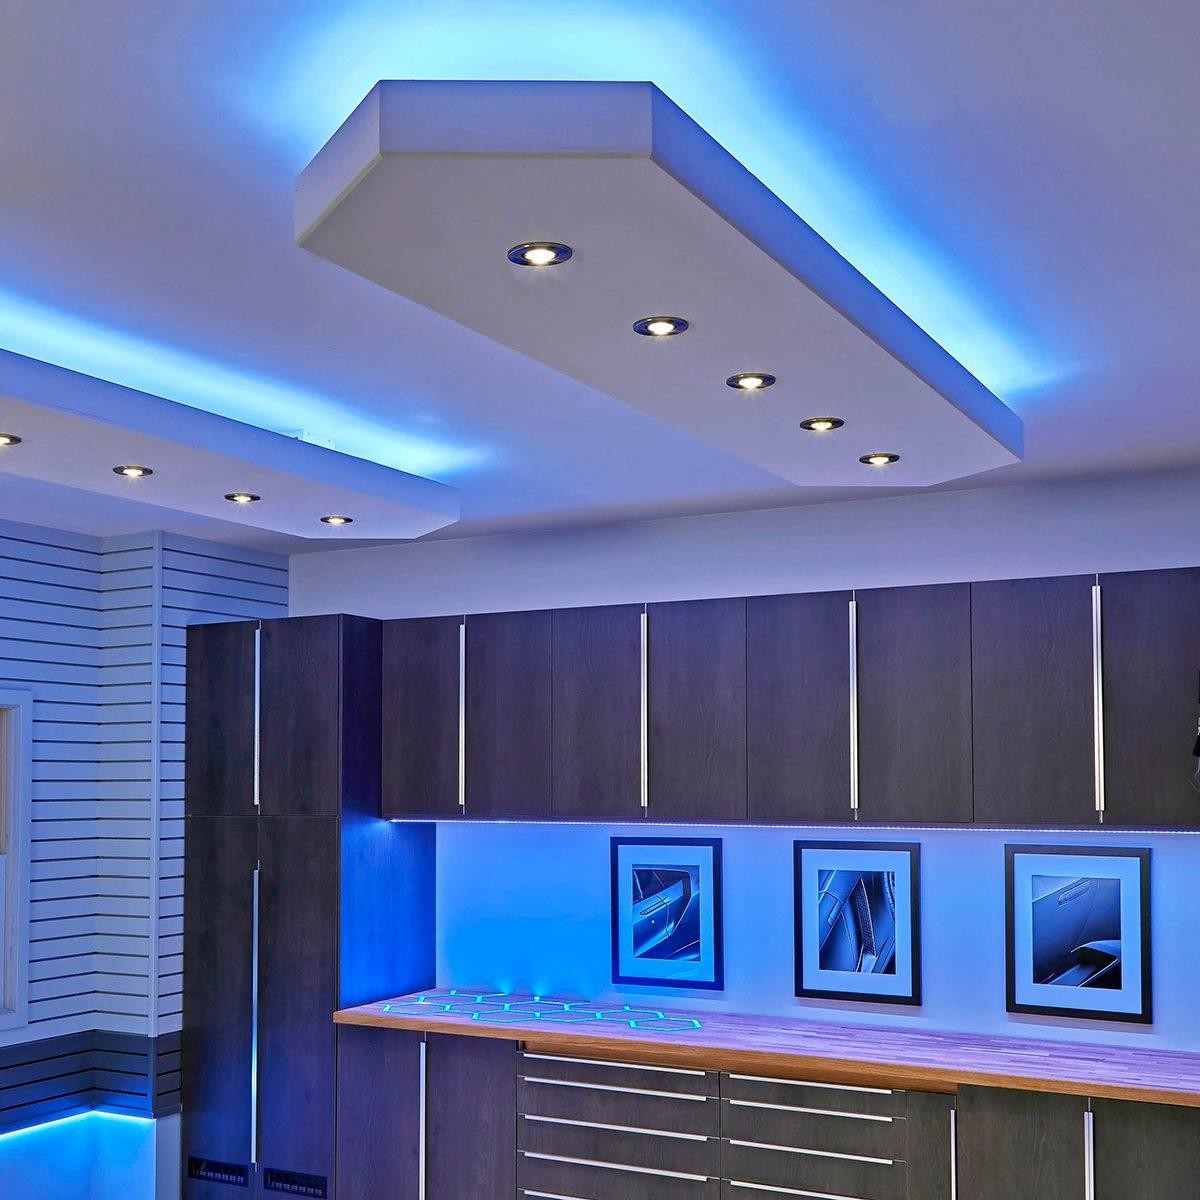 نظرة عامة على تكنولوجيا وحدة LED وتصميمها للأجهزة المنزلية